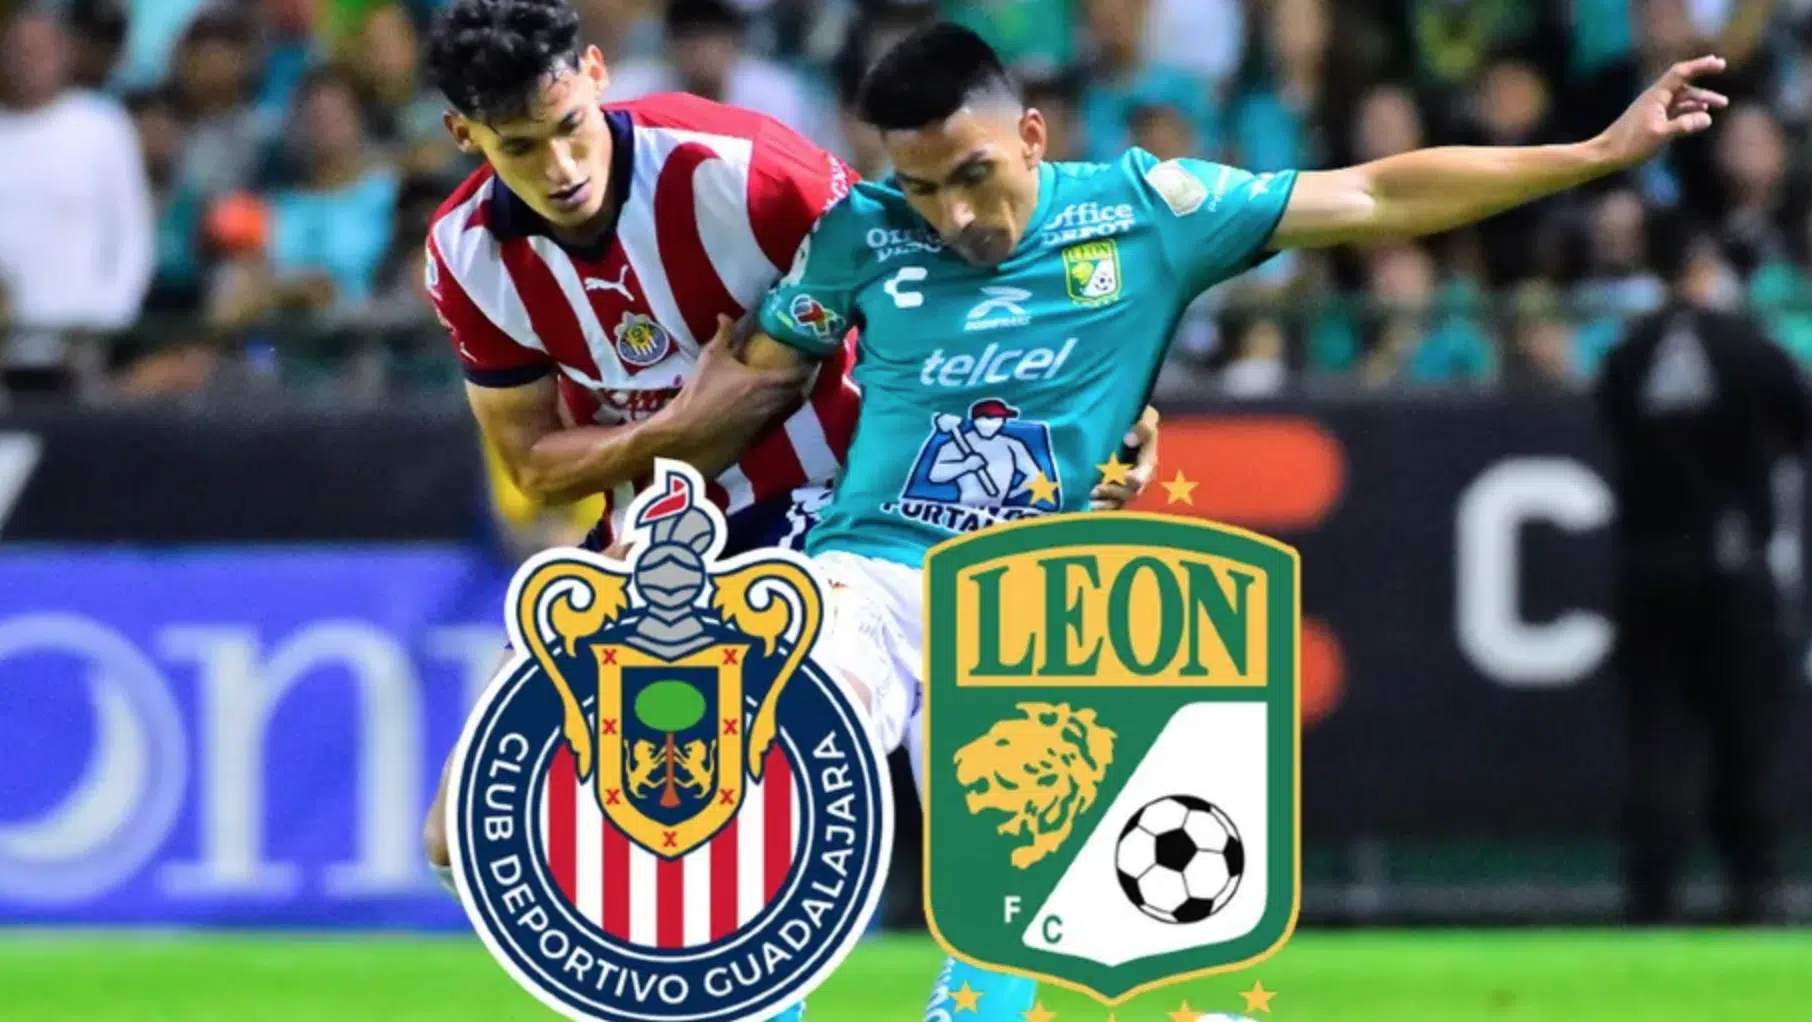 Chivas vs León en la Jornada 11 de la Liga Mx